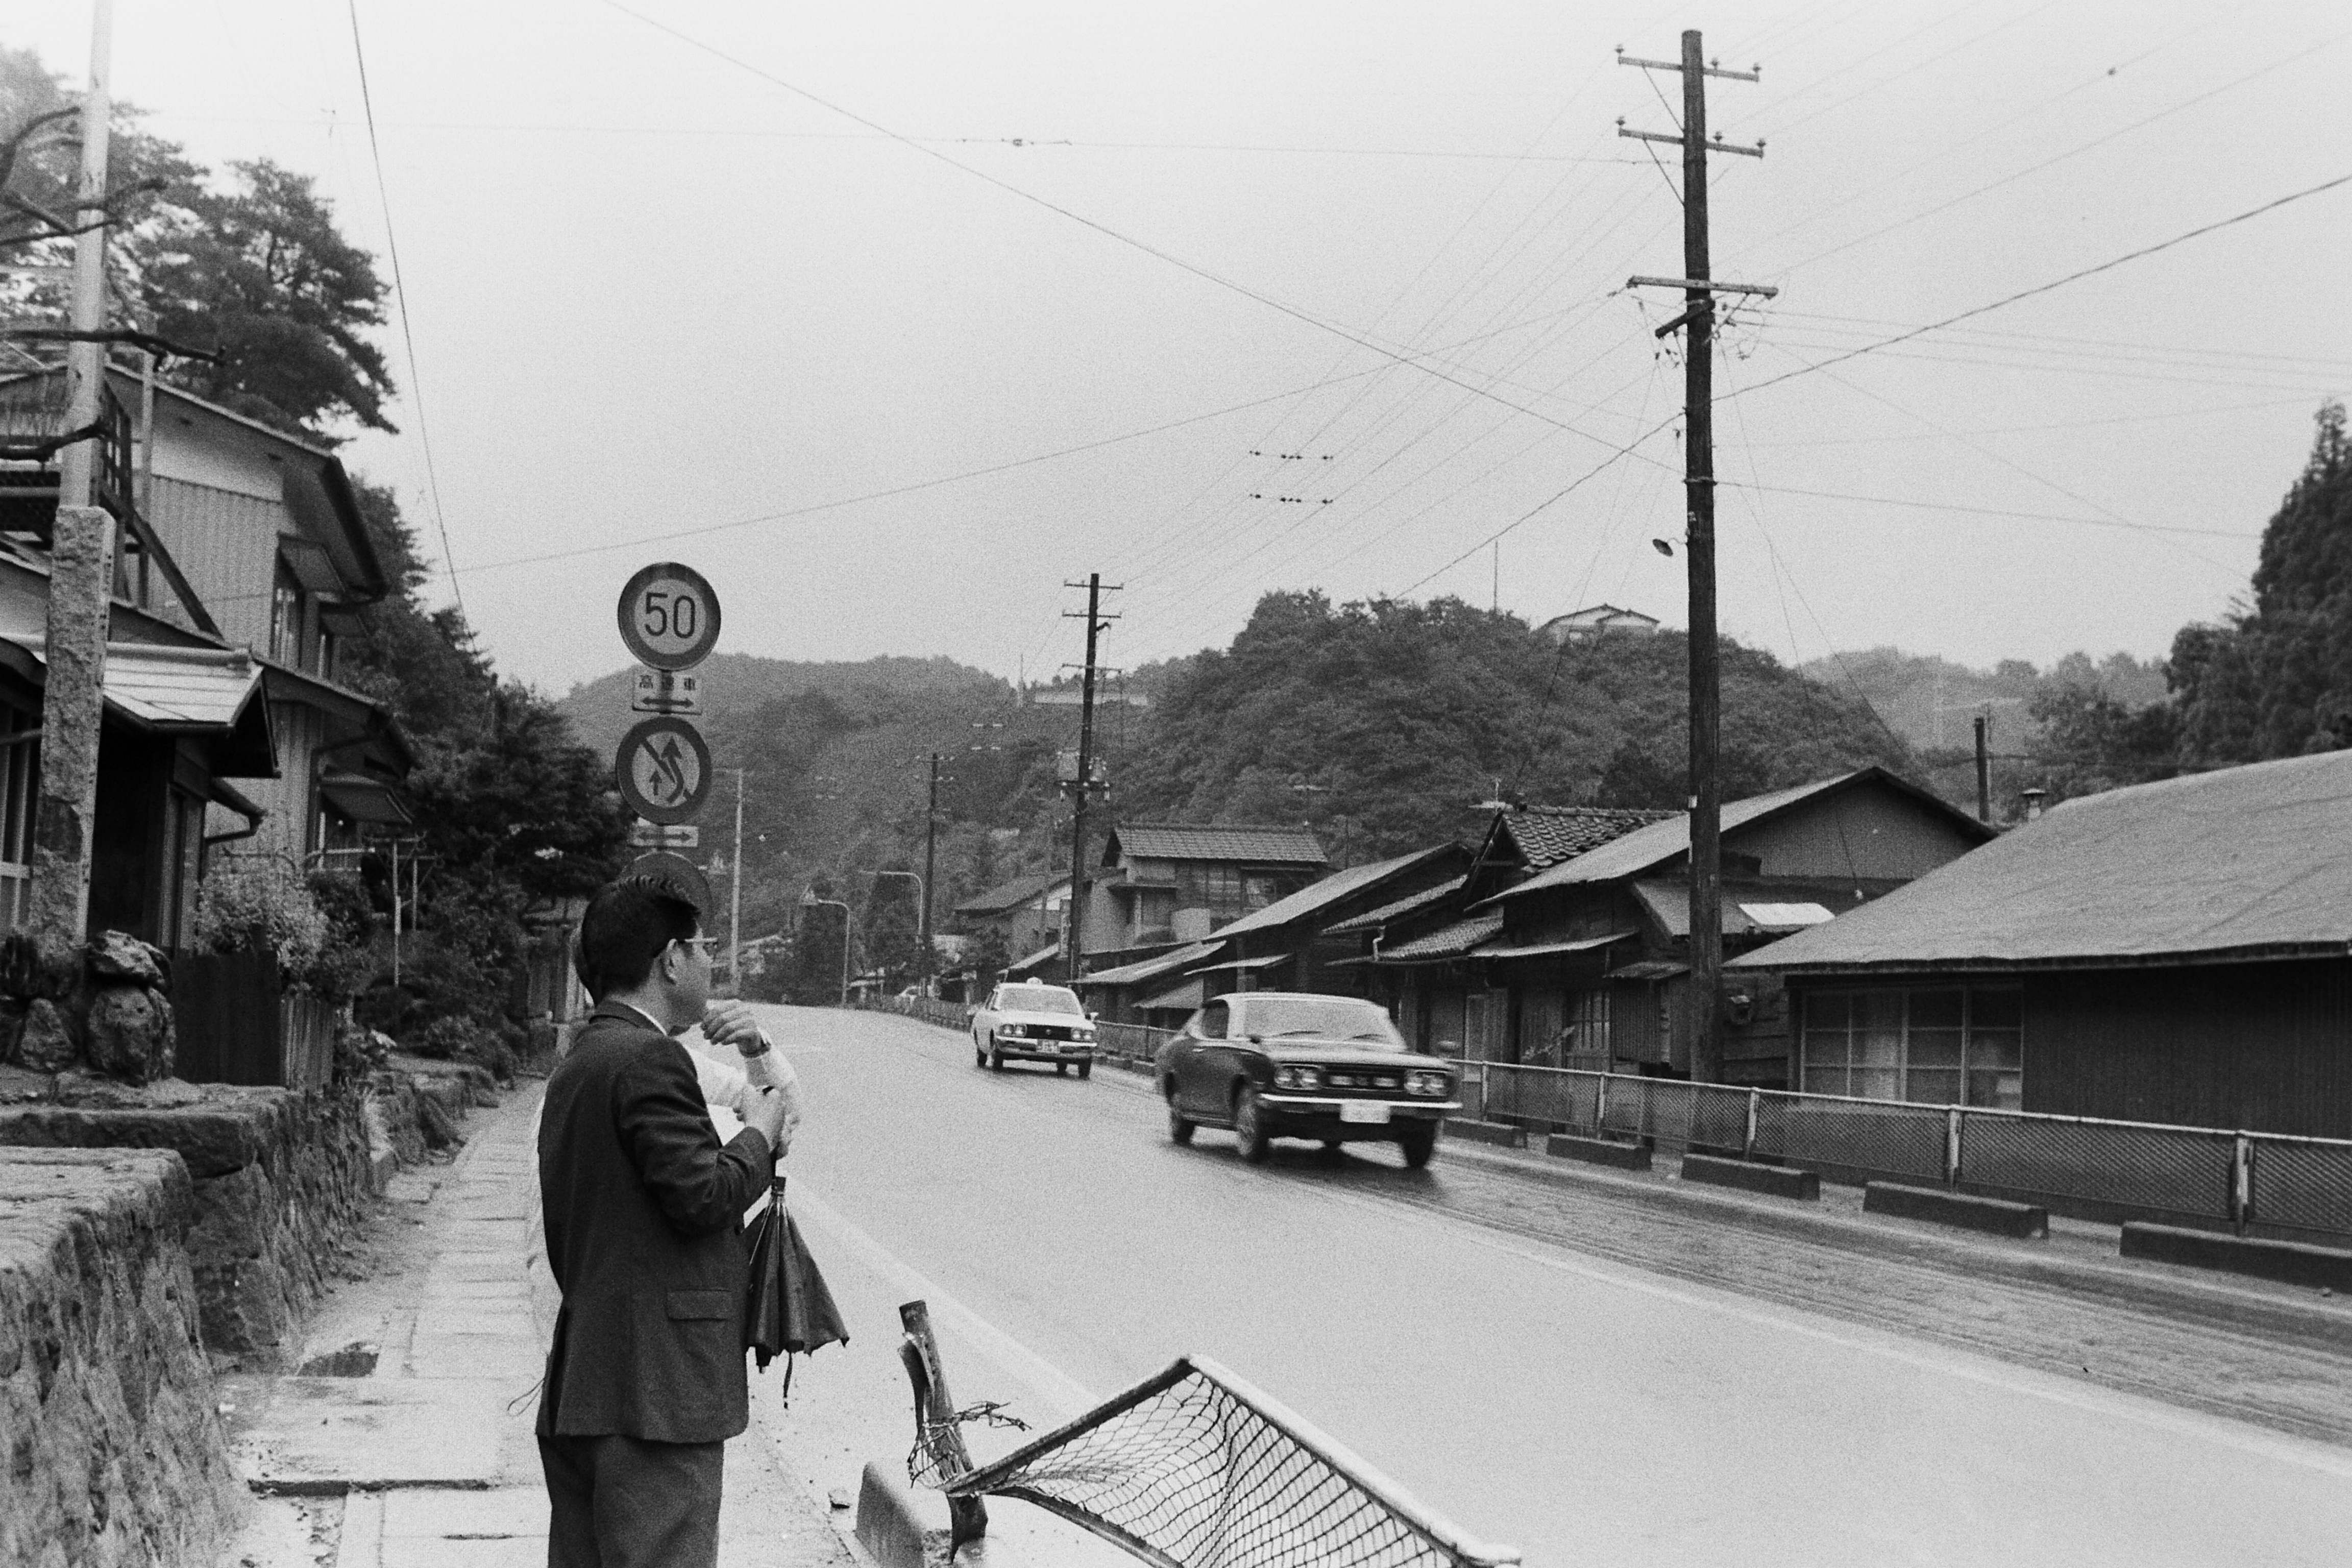 湯本町傾城・国道6号(昭和50年代、いわき市撮影)